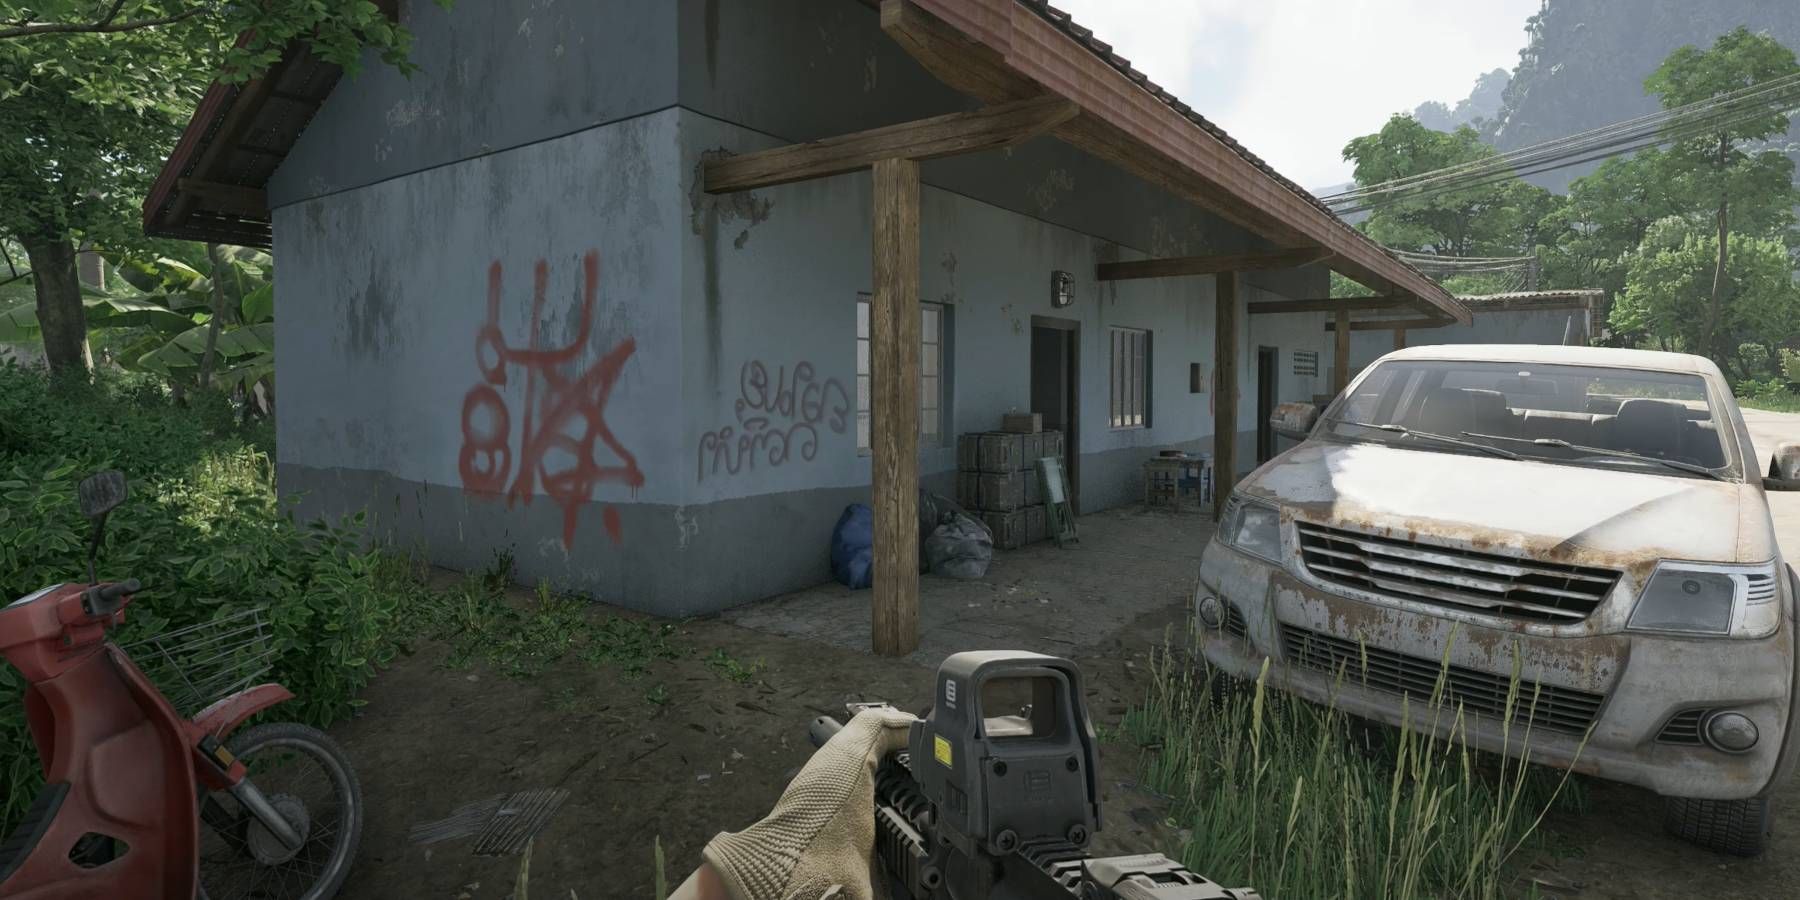 Esconderijo inimigo da guerra na zona cinzenta marcado por graffiti vermelho